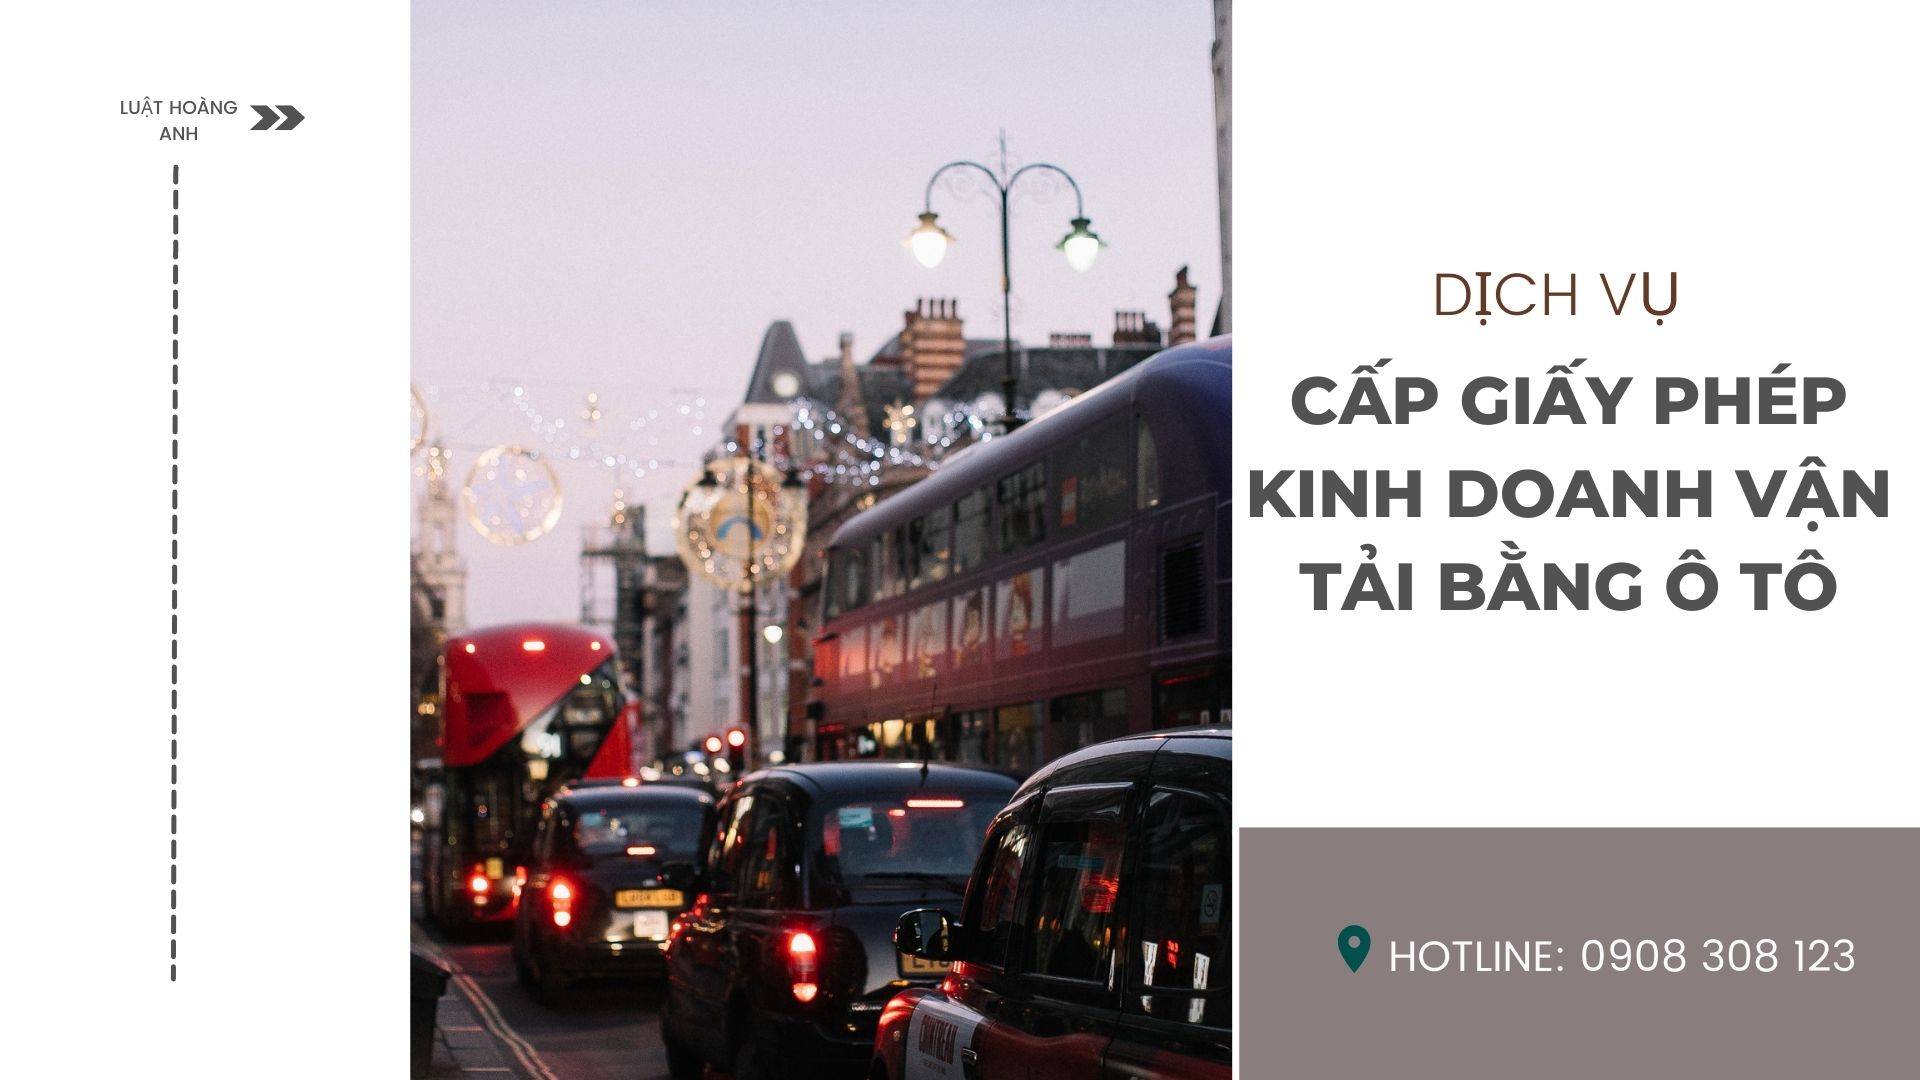 Dịch vụ cấp giấy phép kinh doanh vận tải bằng ô tô tại tỉnh Quảng Ngãi